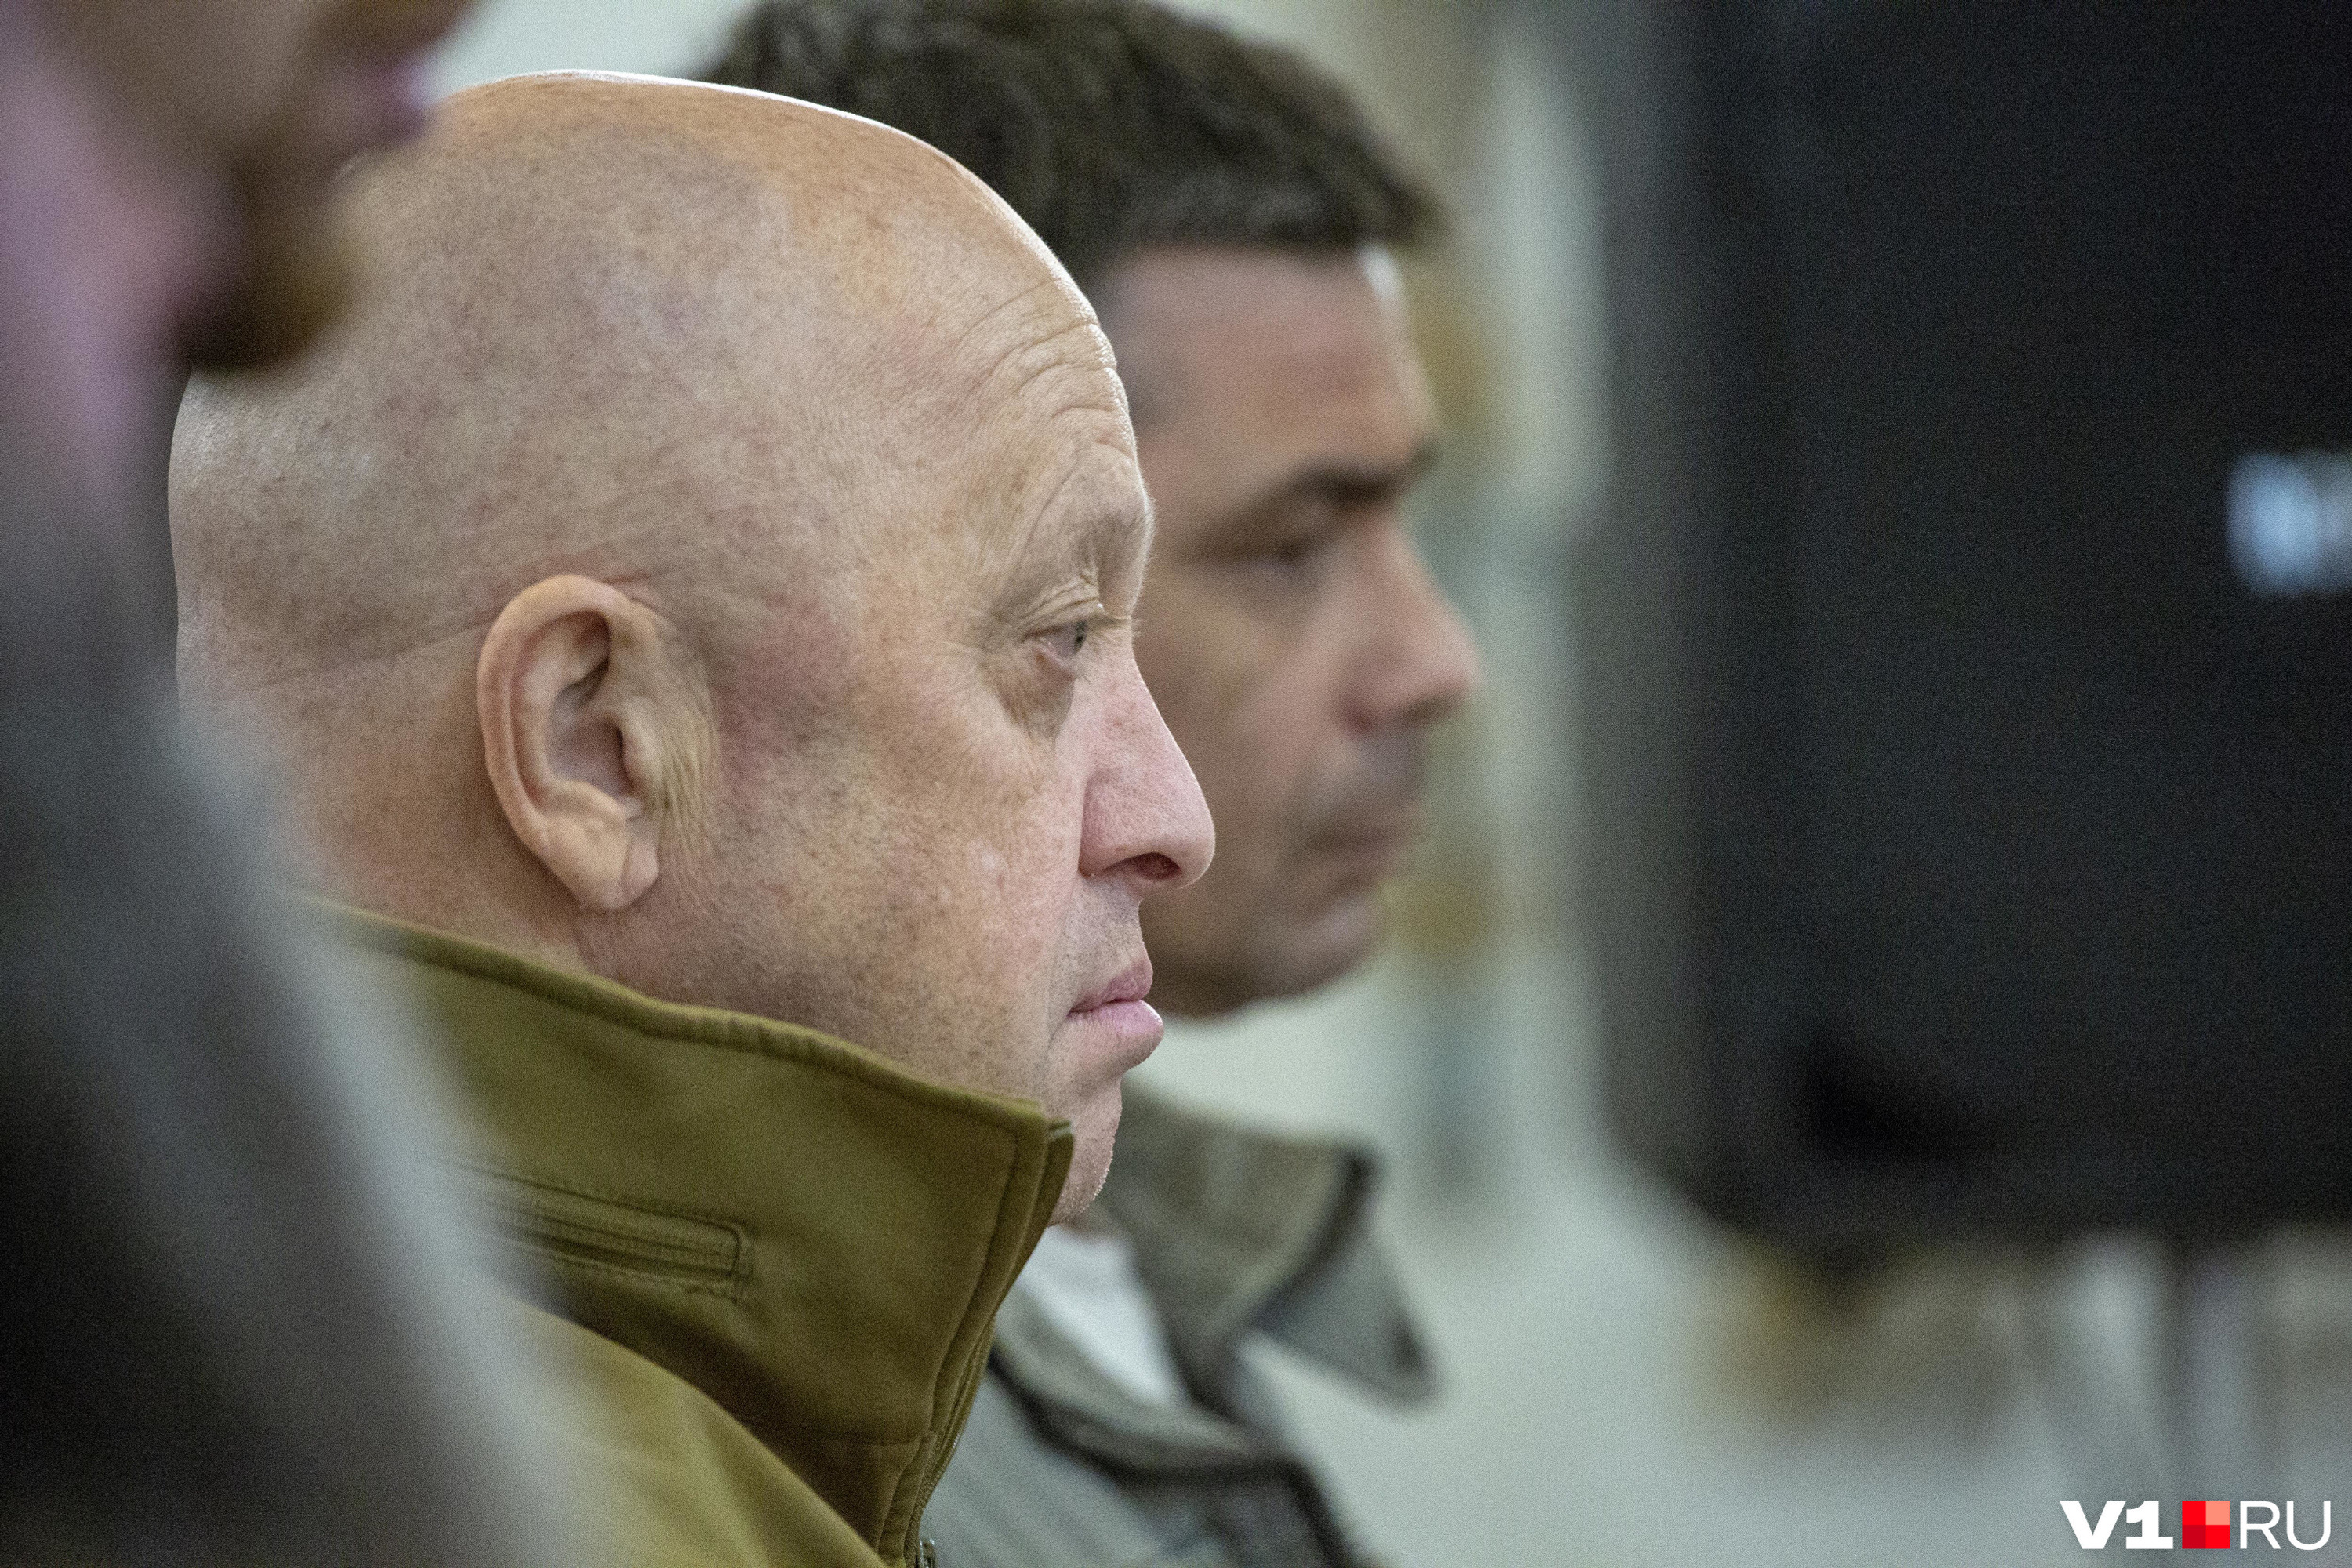 Уголовное дело о мятеже в отношении Евгения Пригожина будет прекращено — что ждет бойцов ЧВК